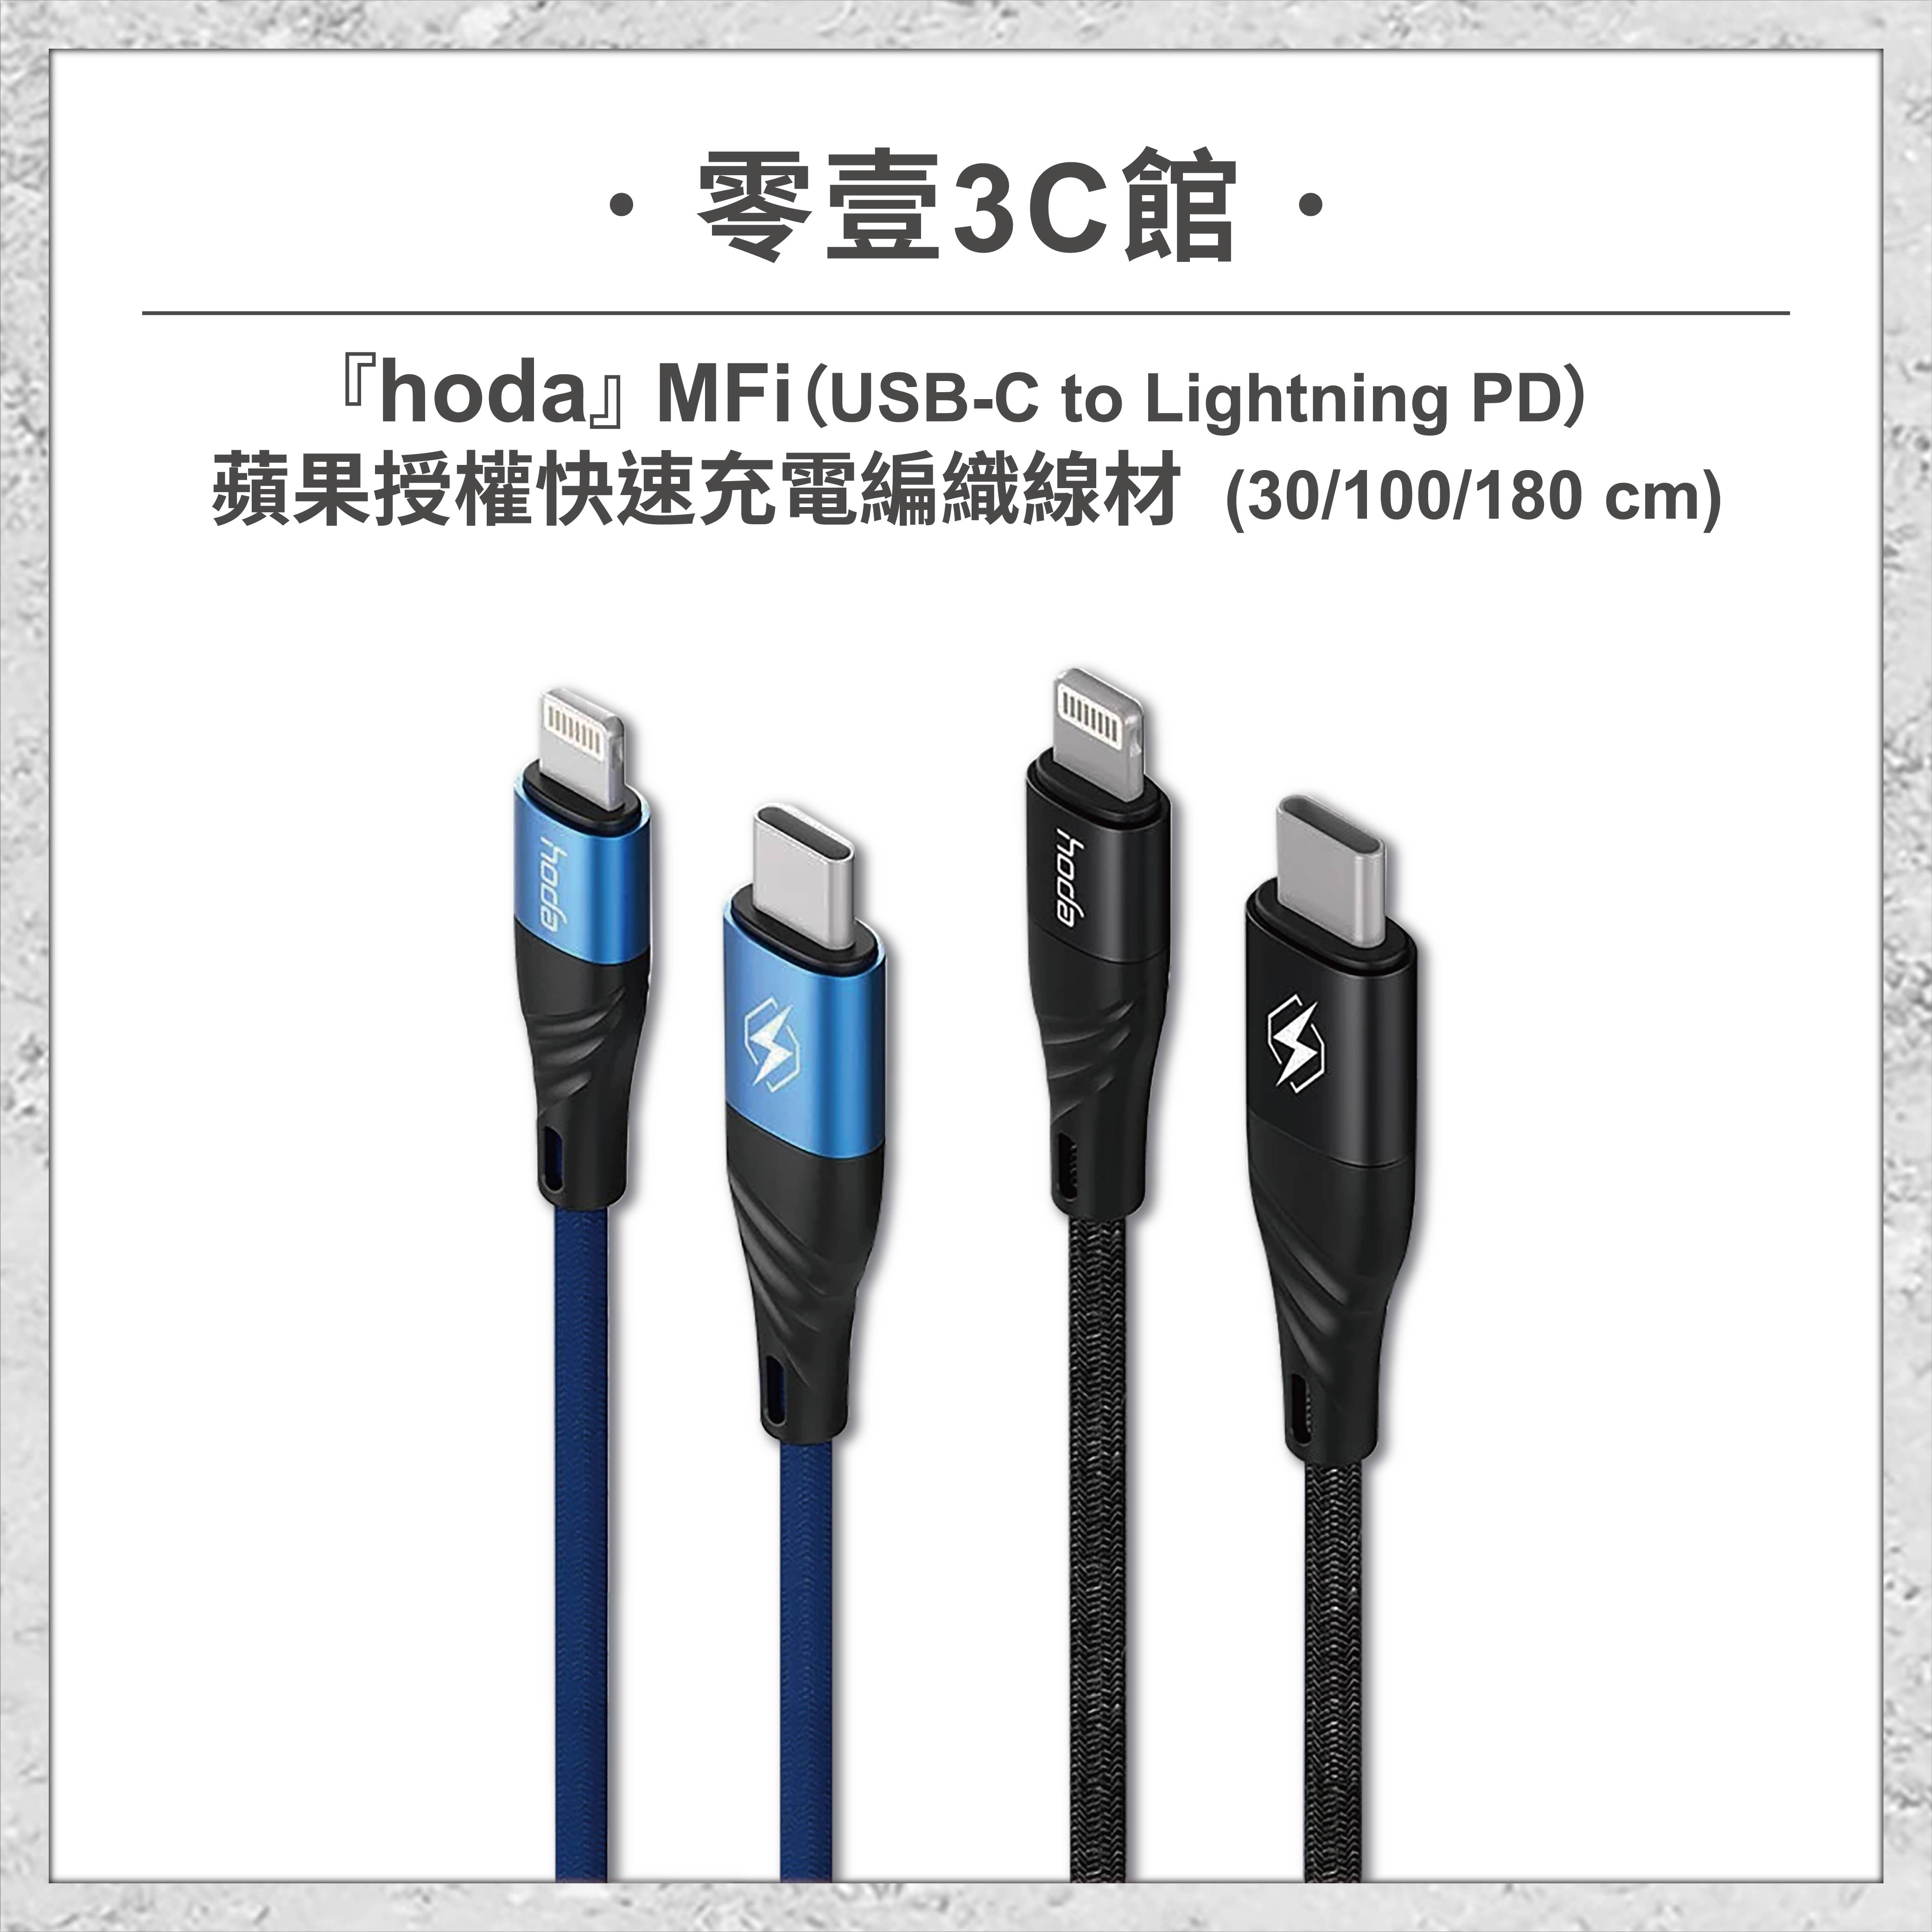 【hoda】MFi USB-C to Lightning PD 蘋果授權快速充電編織線材30/100/180cm 充電線 快充線 快速充電